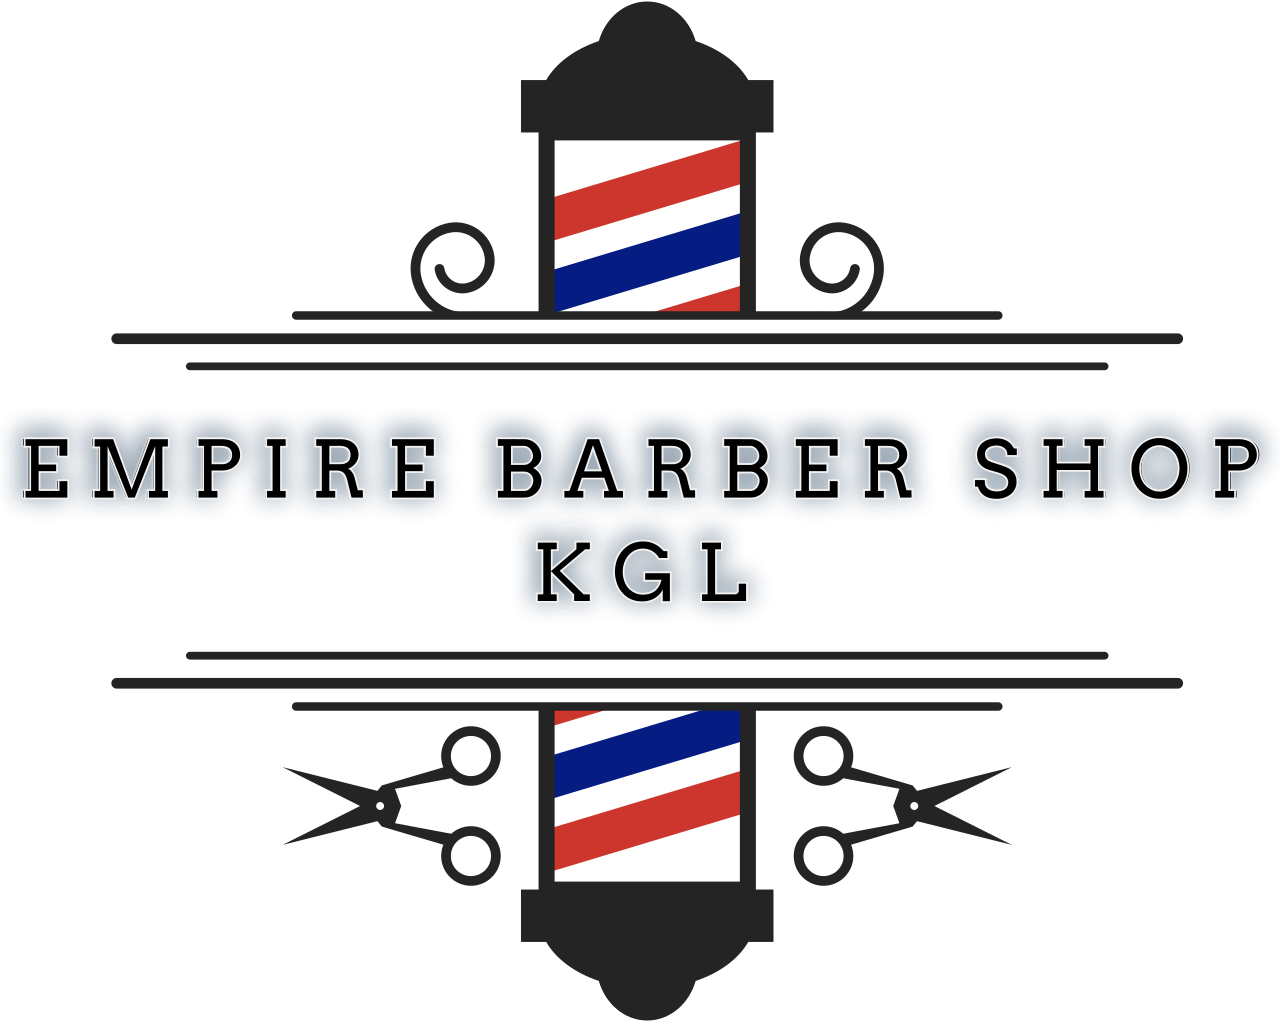 empire barber shop
kgl's logo